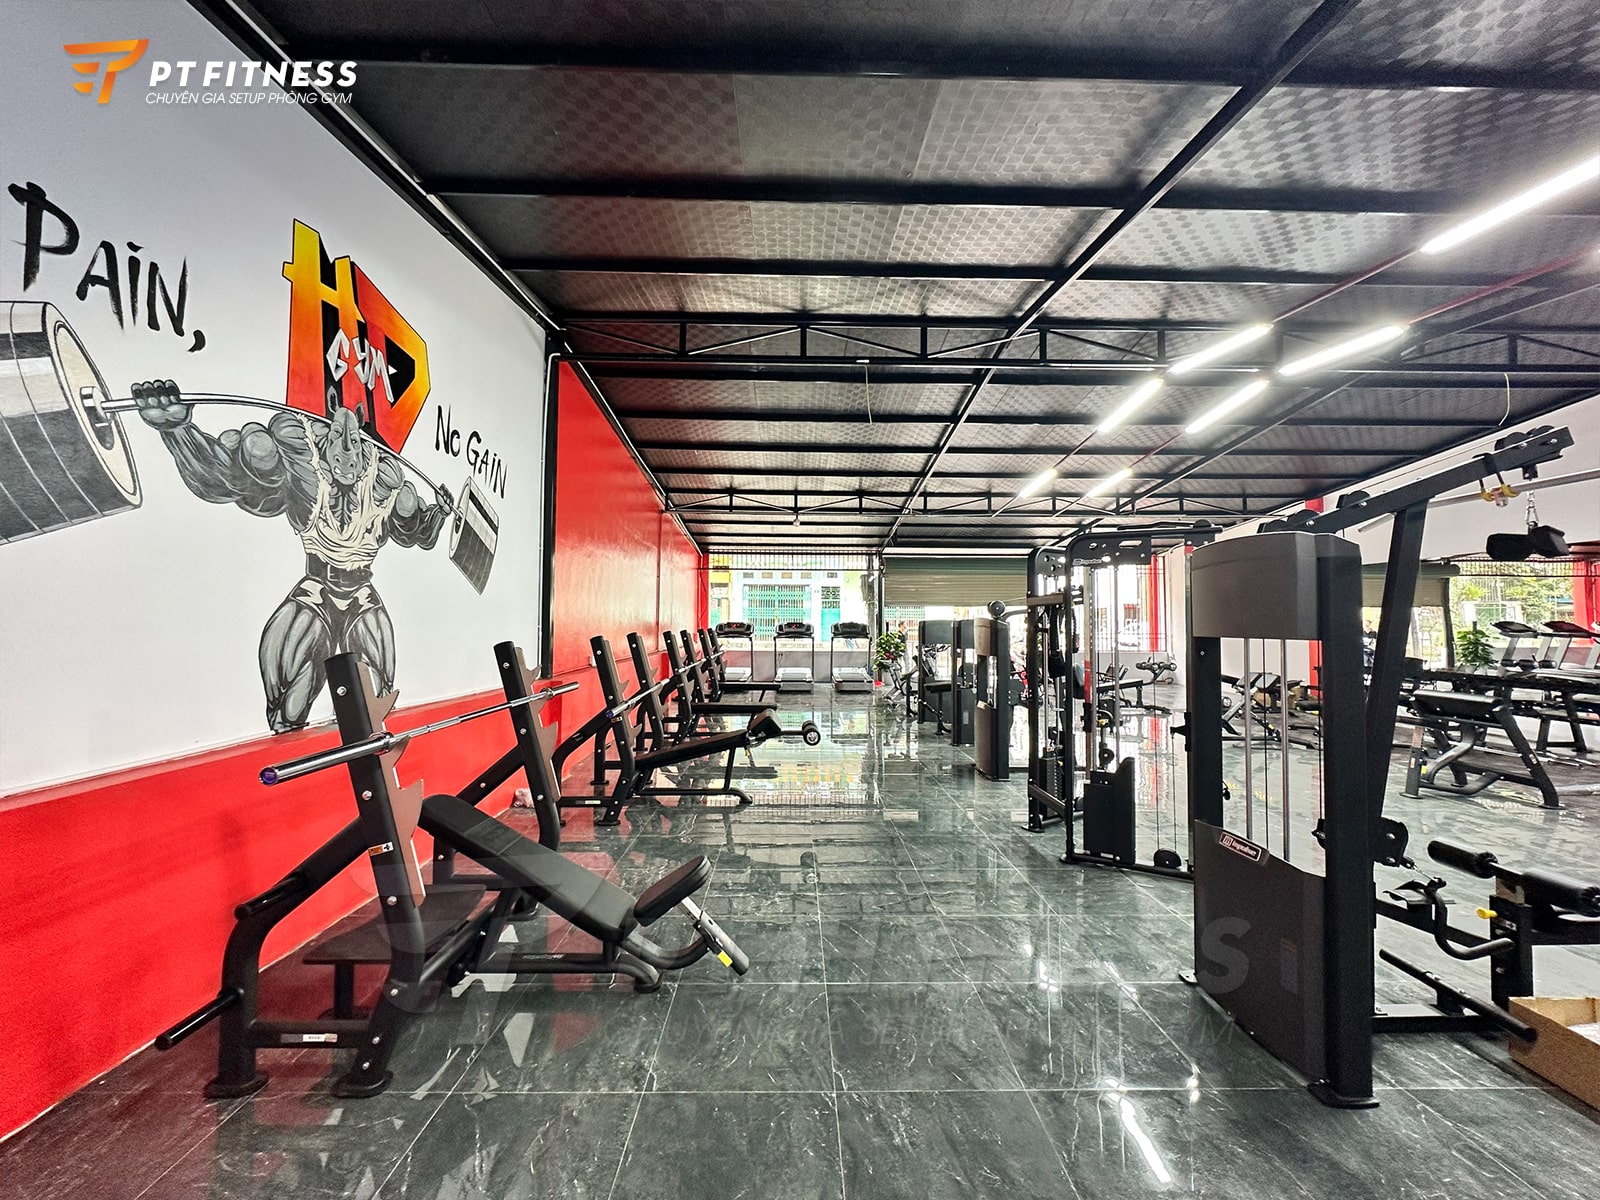 Phòng thể hình thương mại HD Gym - Fitness Center tại Thái Nguyên